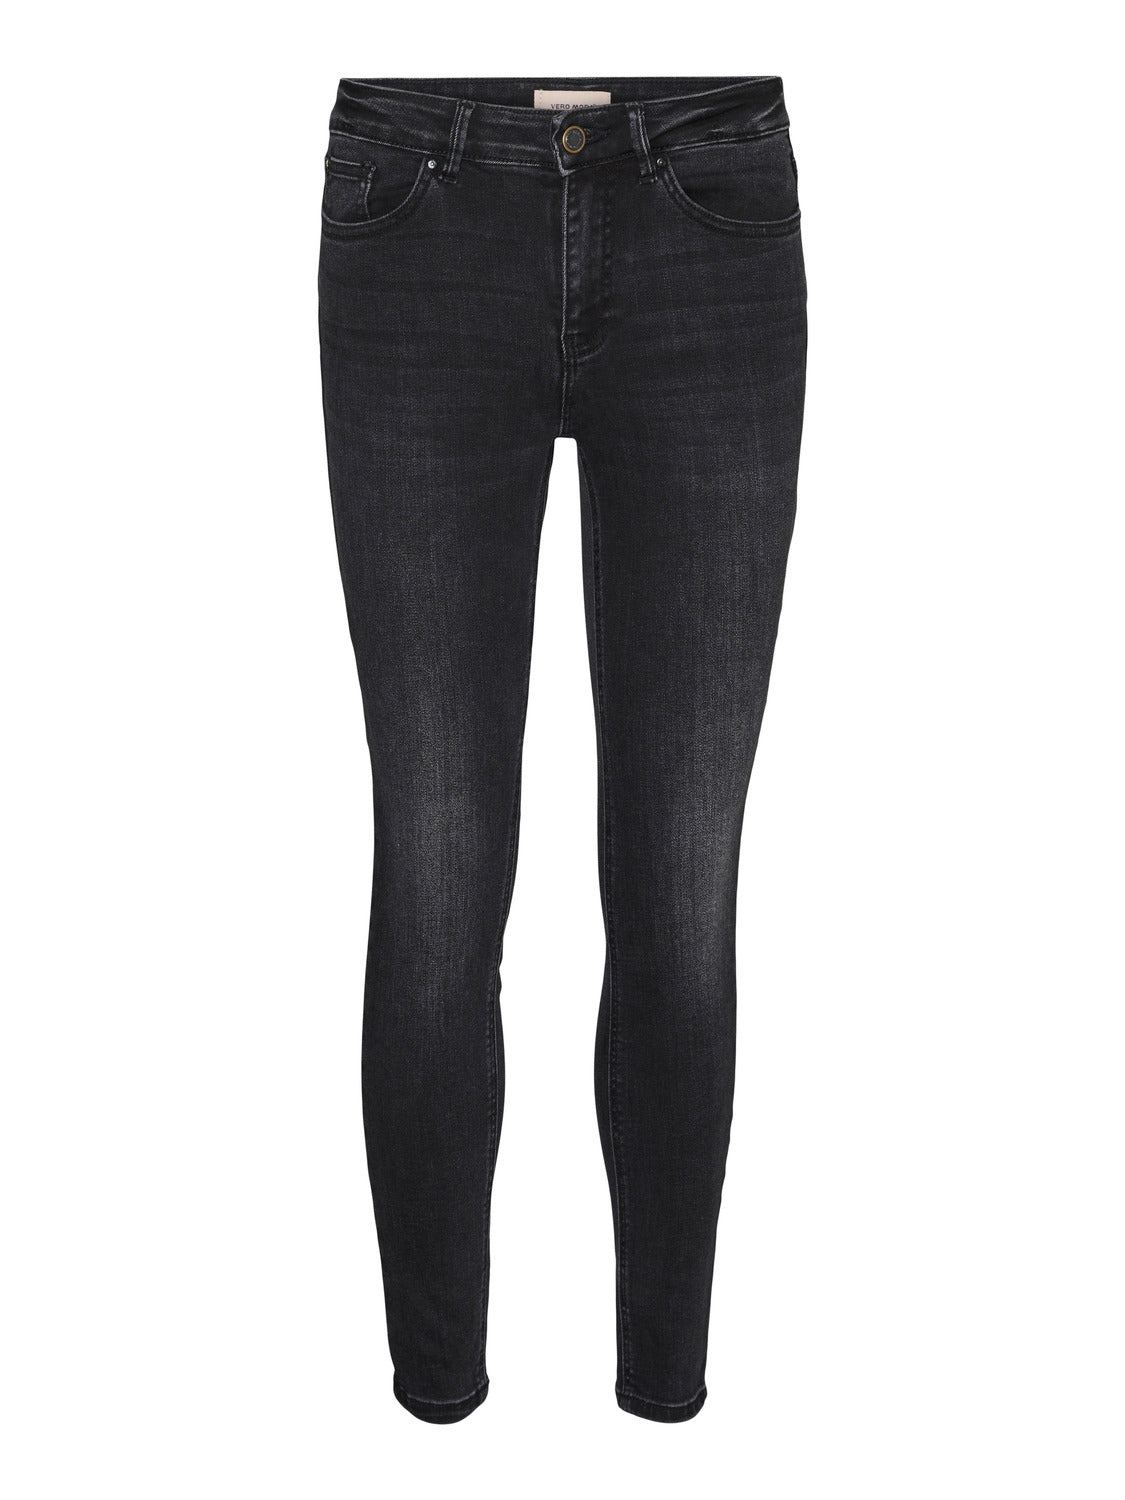 VMFLASH Skinny Jeans - Black Denim